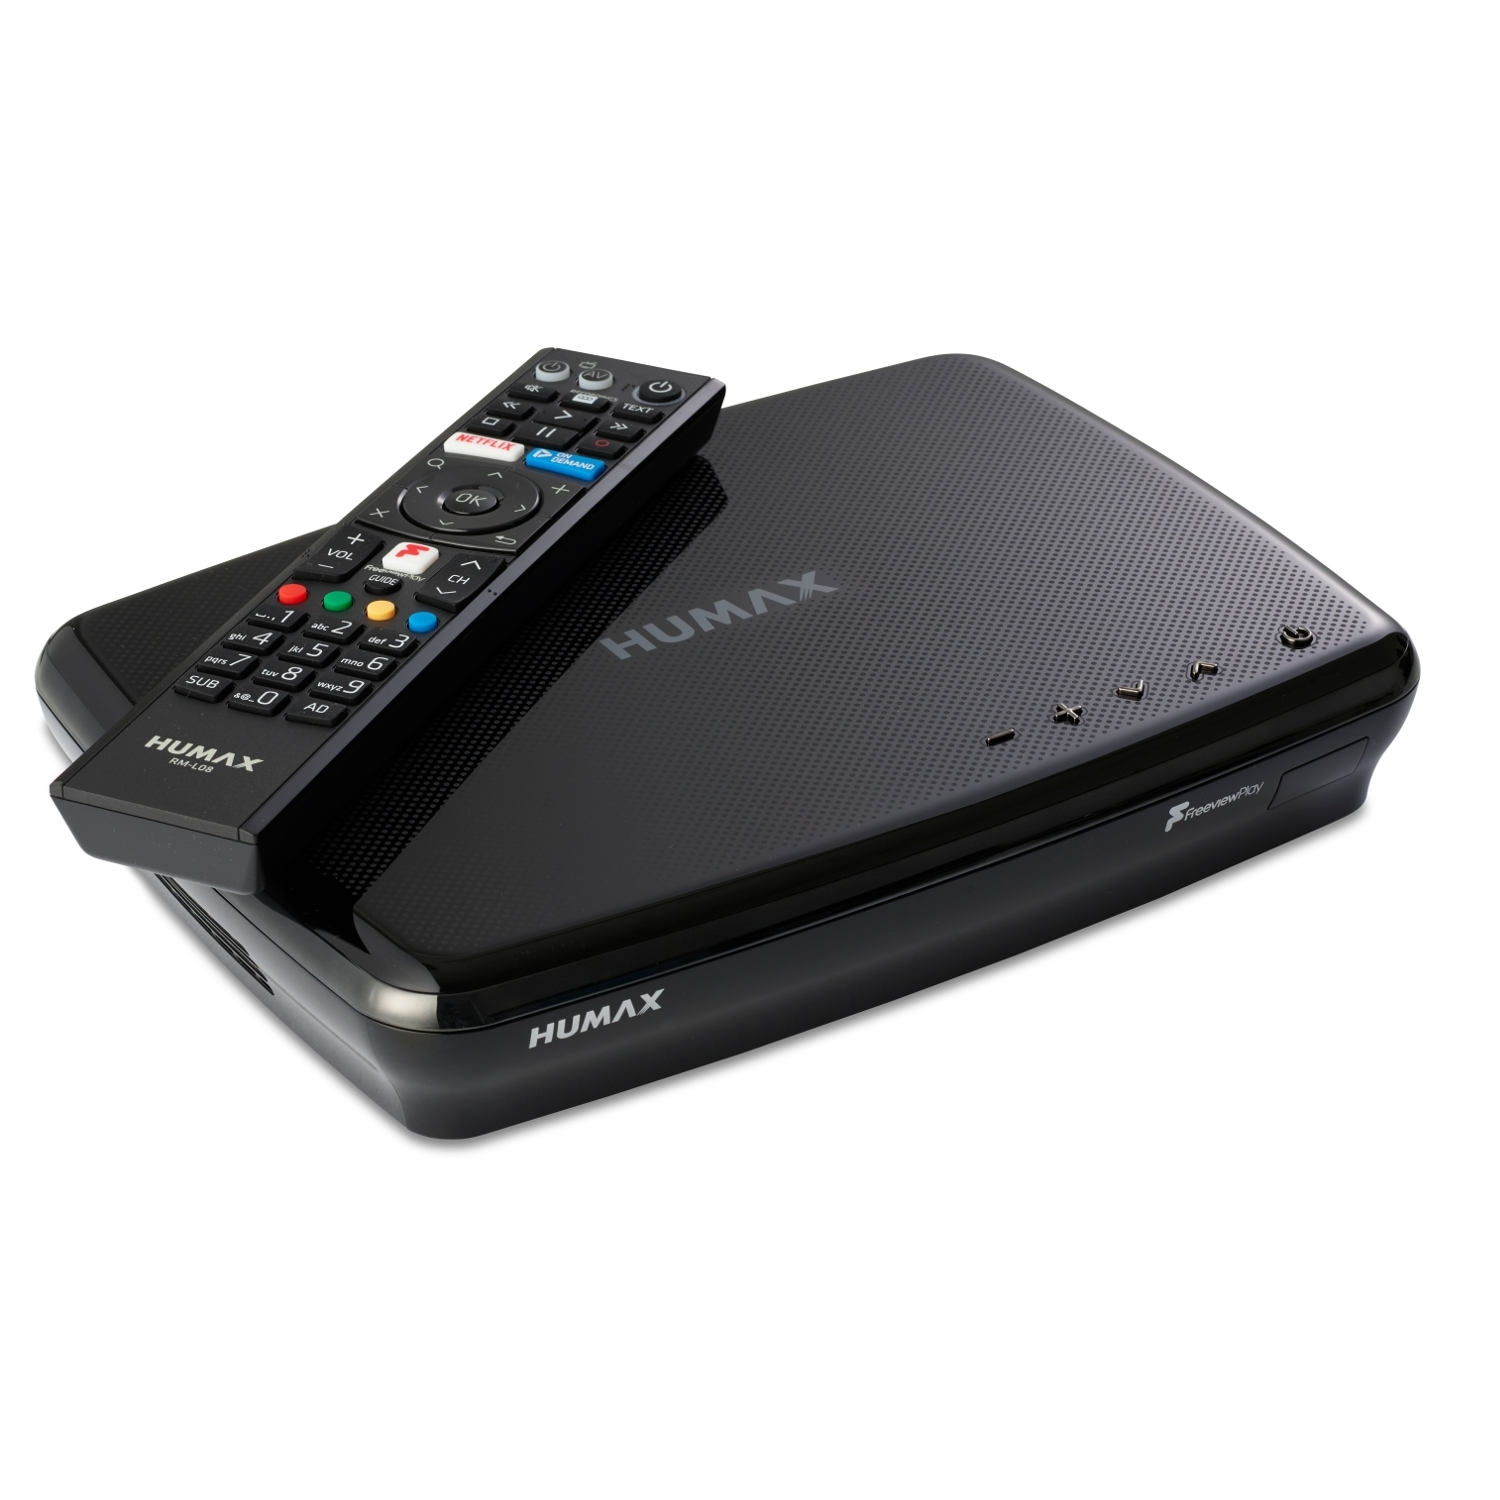 Humax FVP5000T 1TB Digital Video Recorder - 1 TB HDD-Freeview-HD-Smart- Black - 0